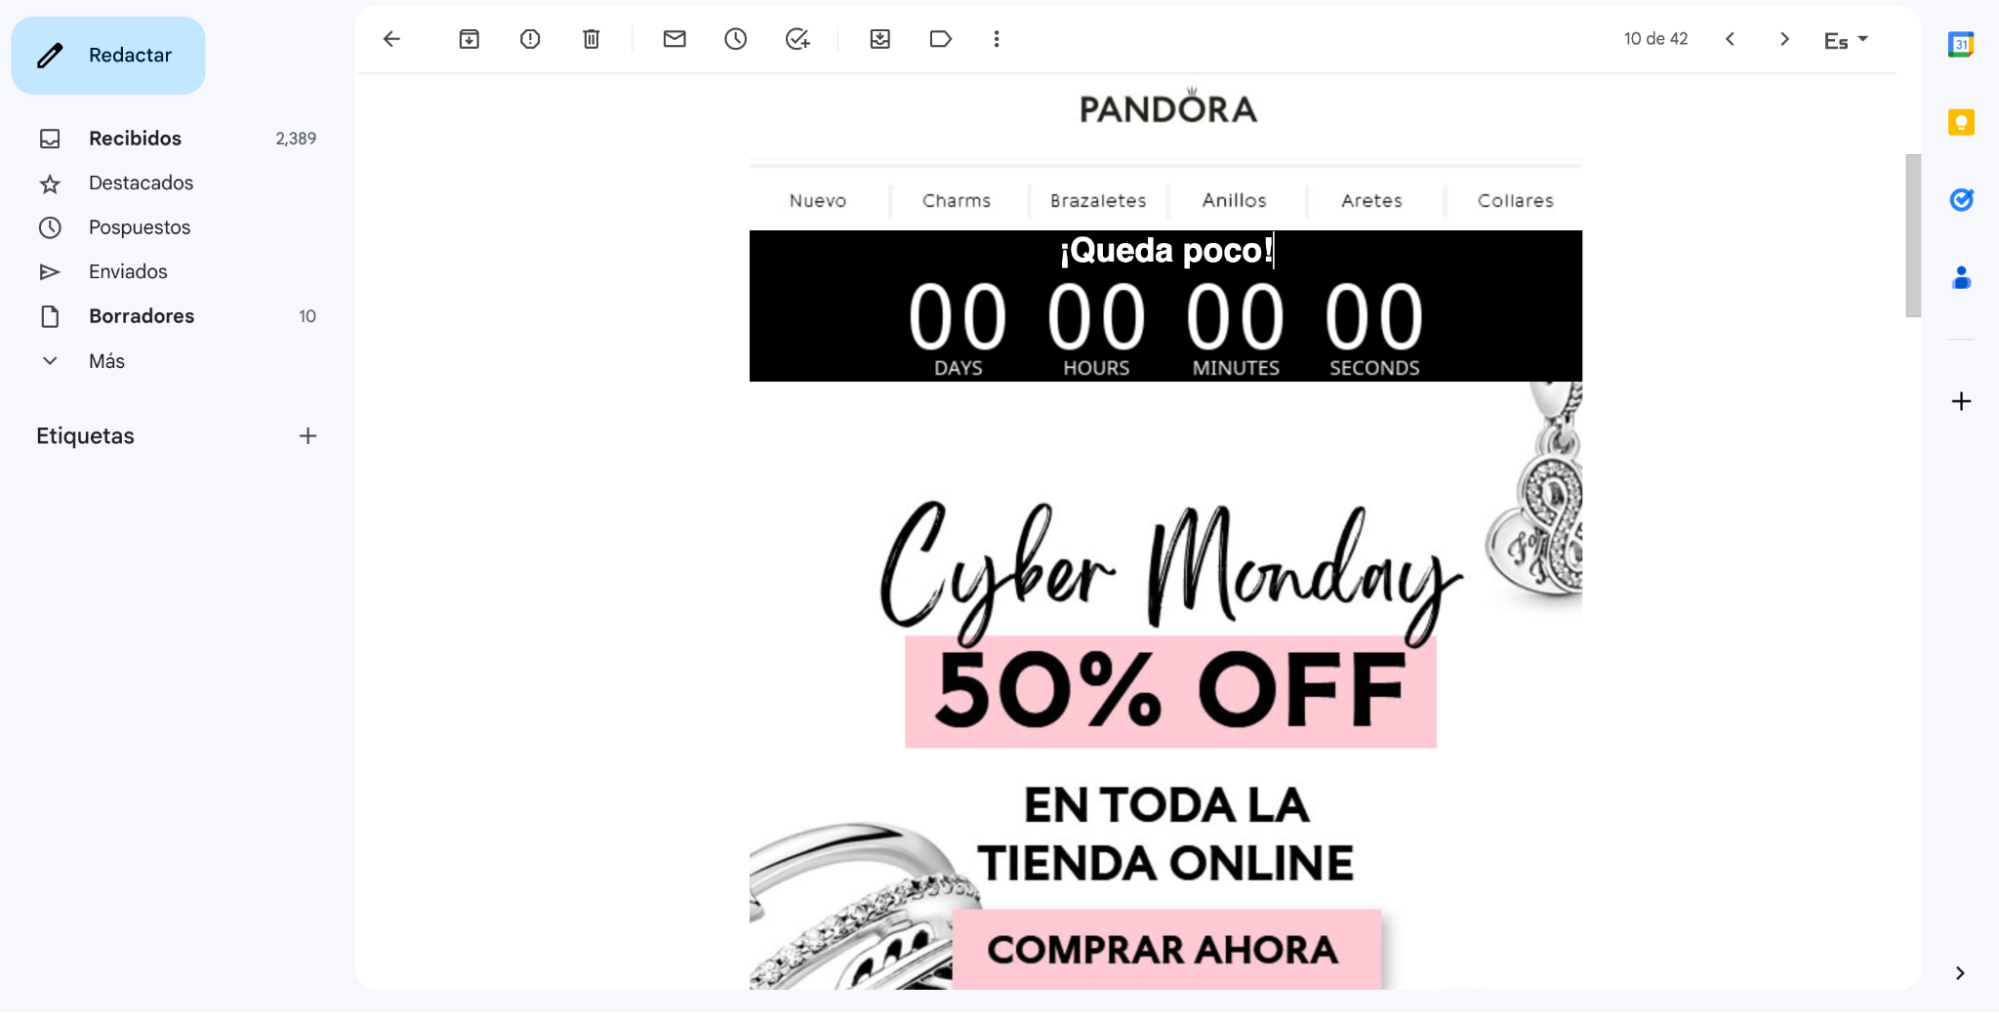 Campaña de Pandora para el Cyber Monday 2022